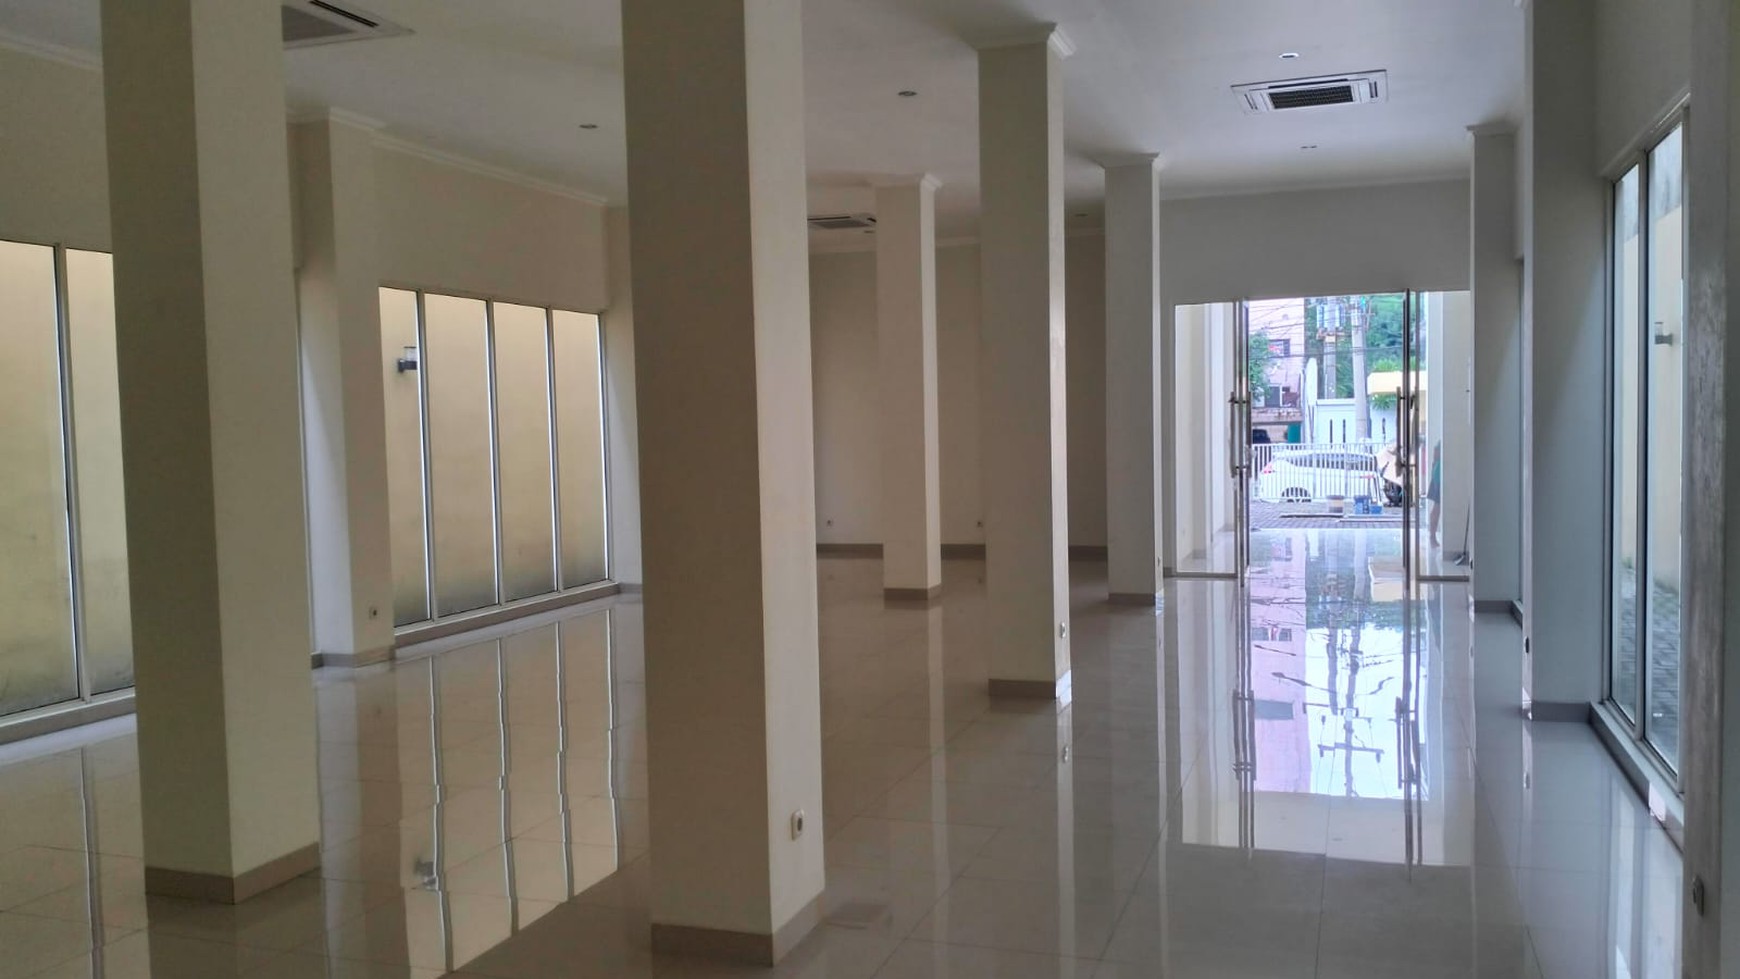 Disewakan Gedung Baru 4 Lantai siap pakai di Jl. Embong Cerme - Surabaya Pusat